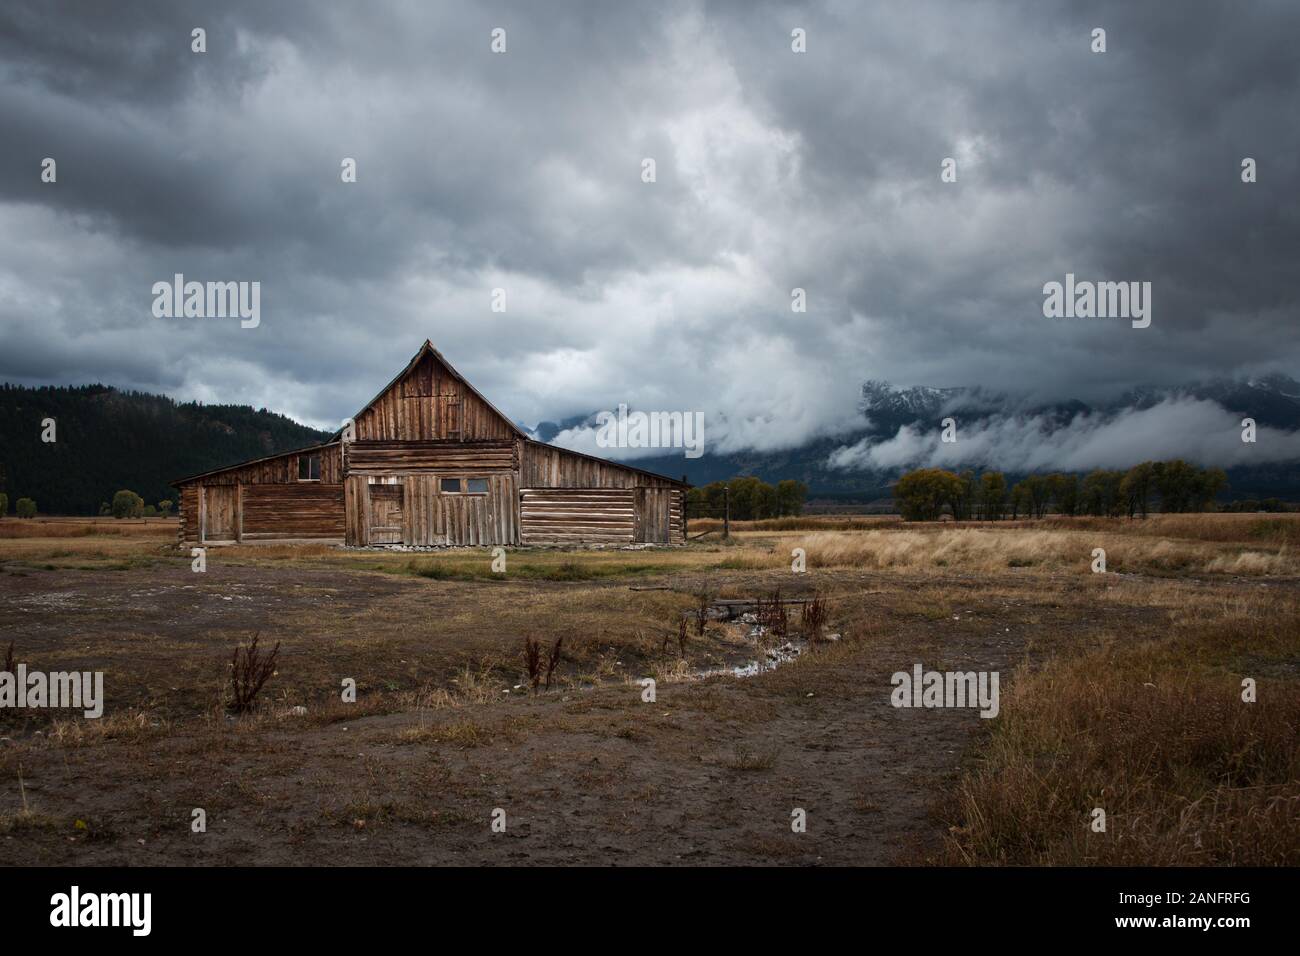 La célèbre T.A. Moulton barn avec chaîne Teton dans les nuages Banque D'Images